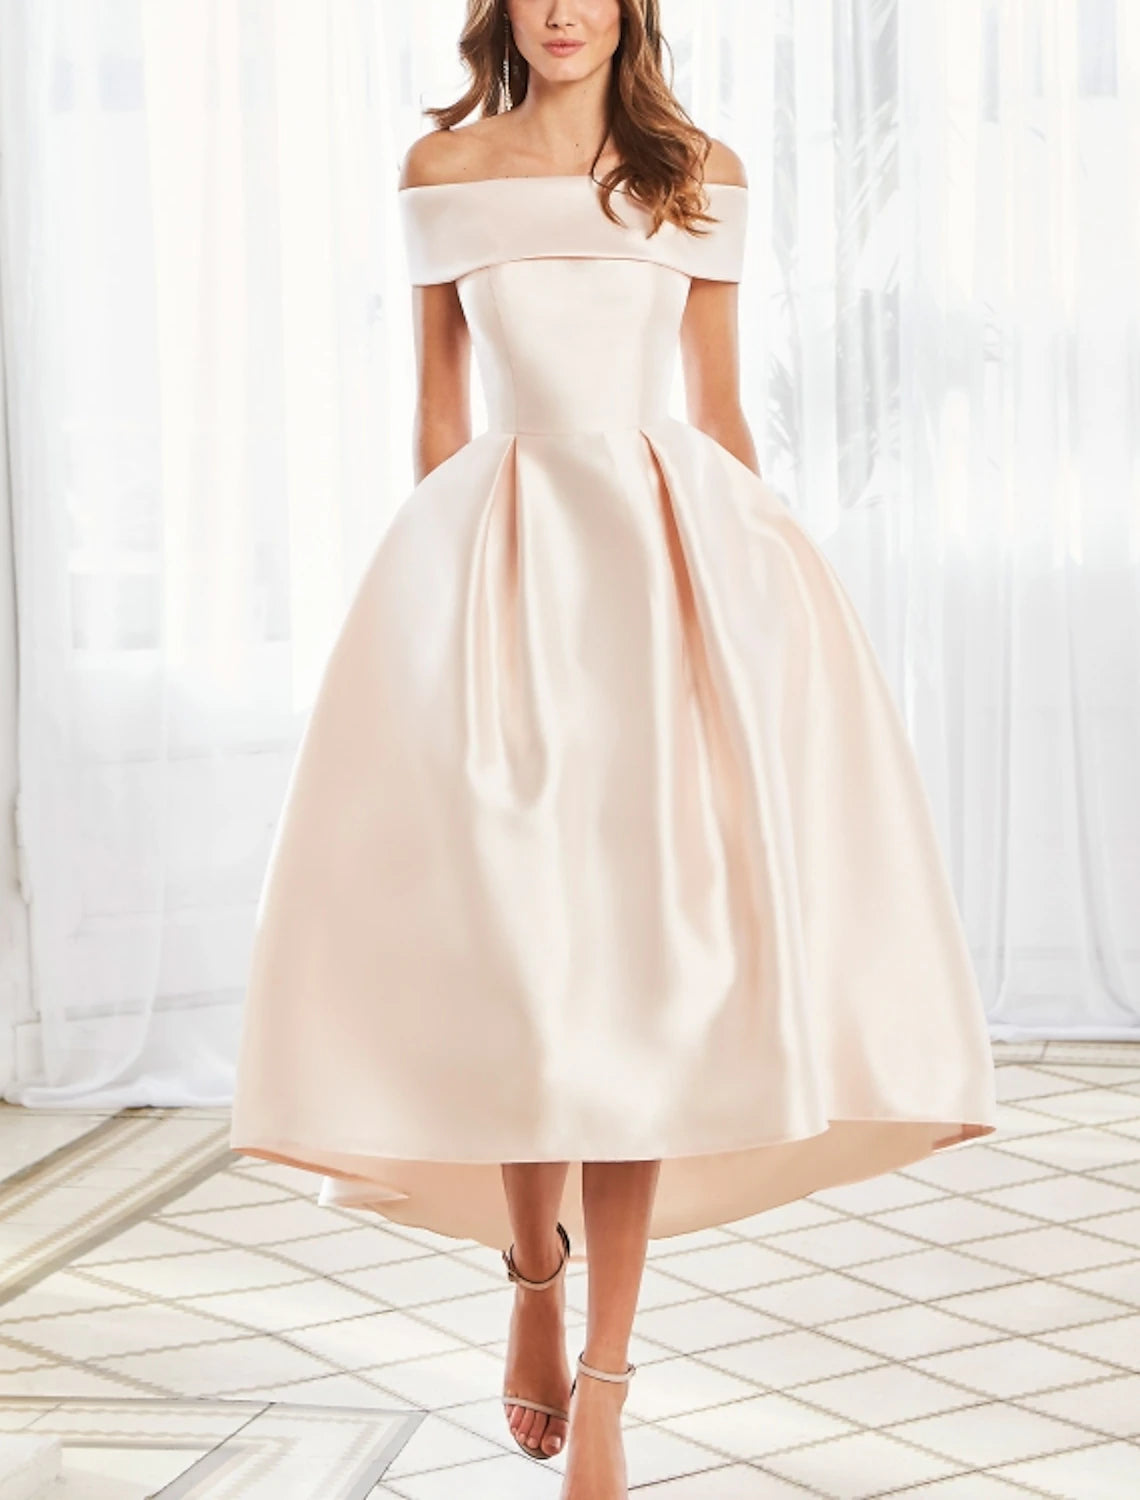 Ball Gown Elegant Vintage Engagement Prom Dress Off Shoulder Short Sleeve Ankle Length Satin with Sleek